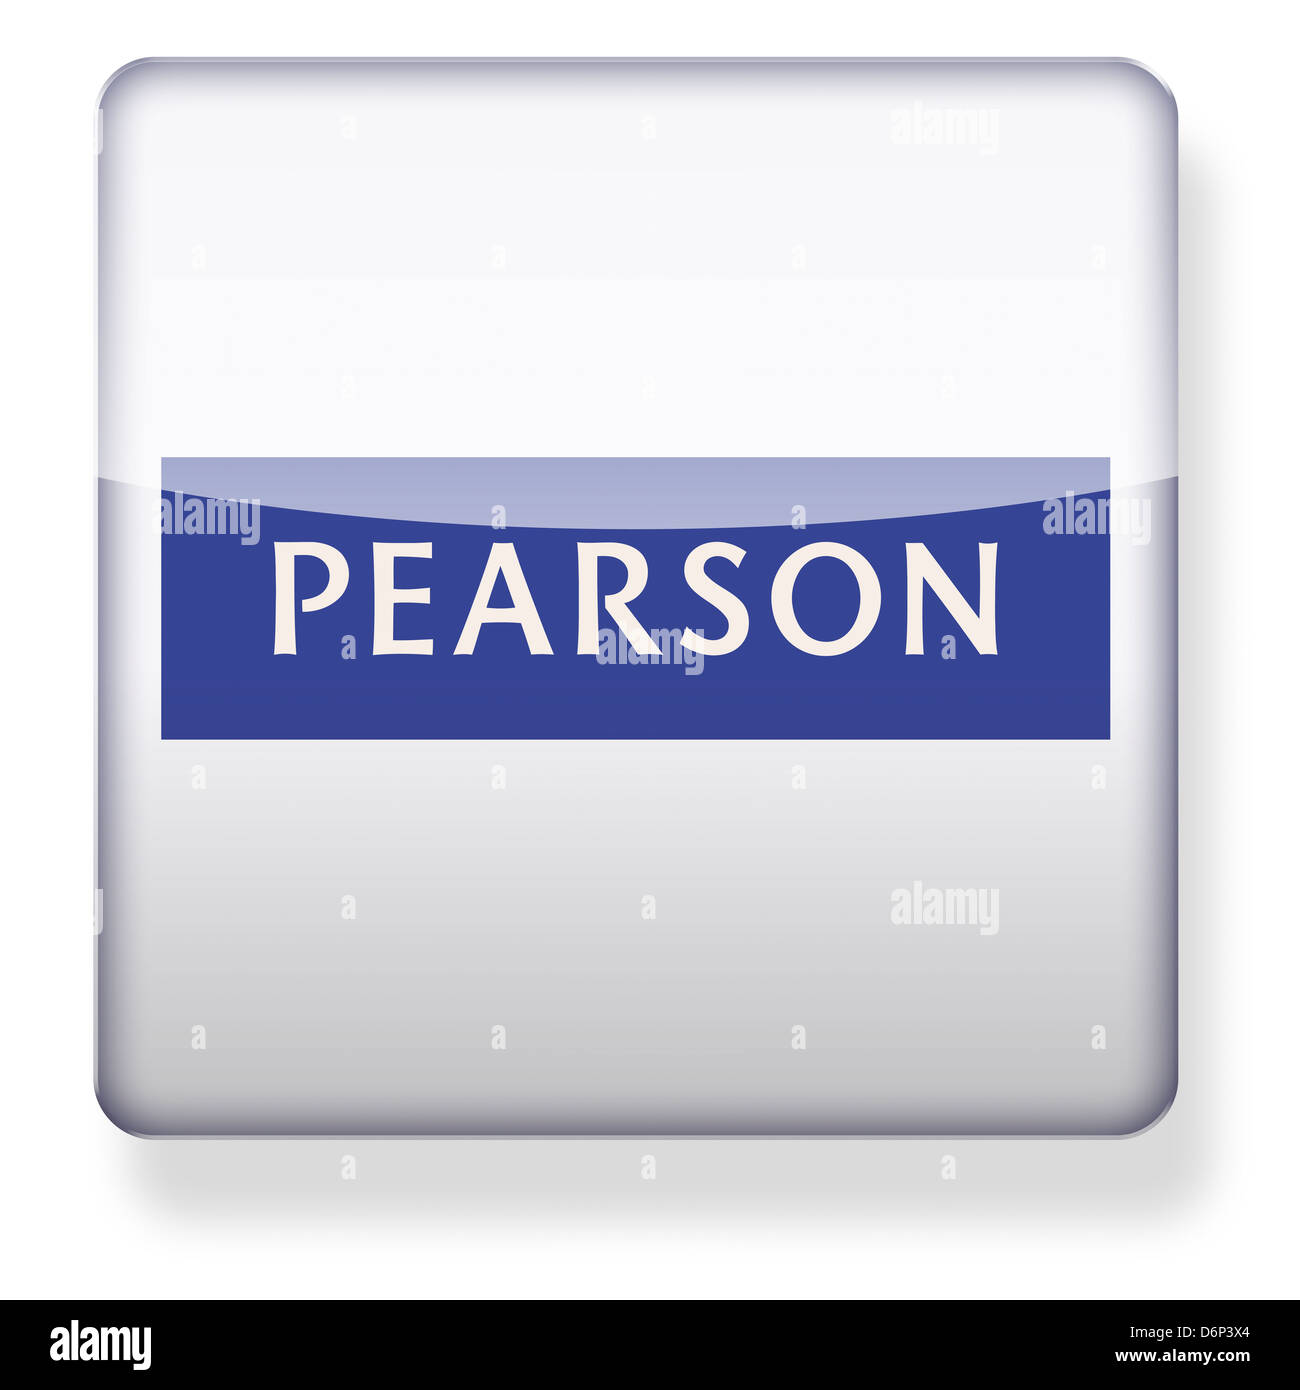 Pearson logo come l'icona di un'app. Percorso di clipping incluso. Foto Stock